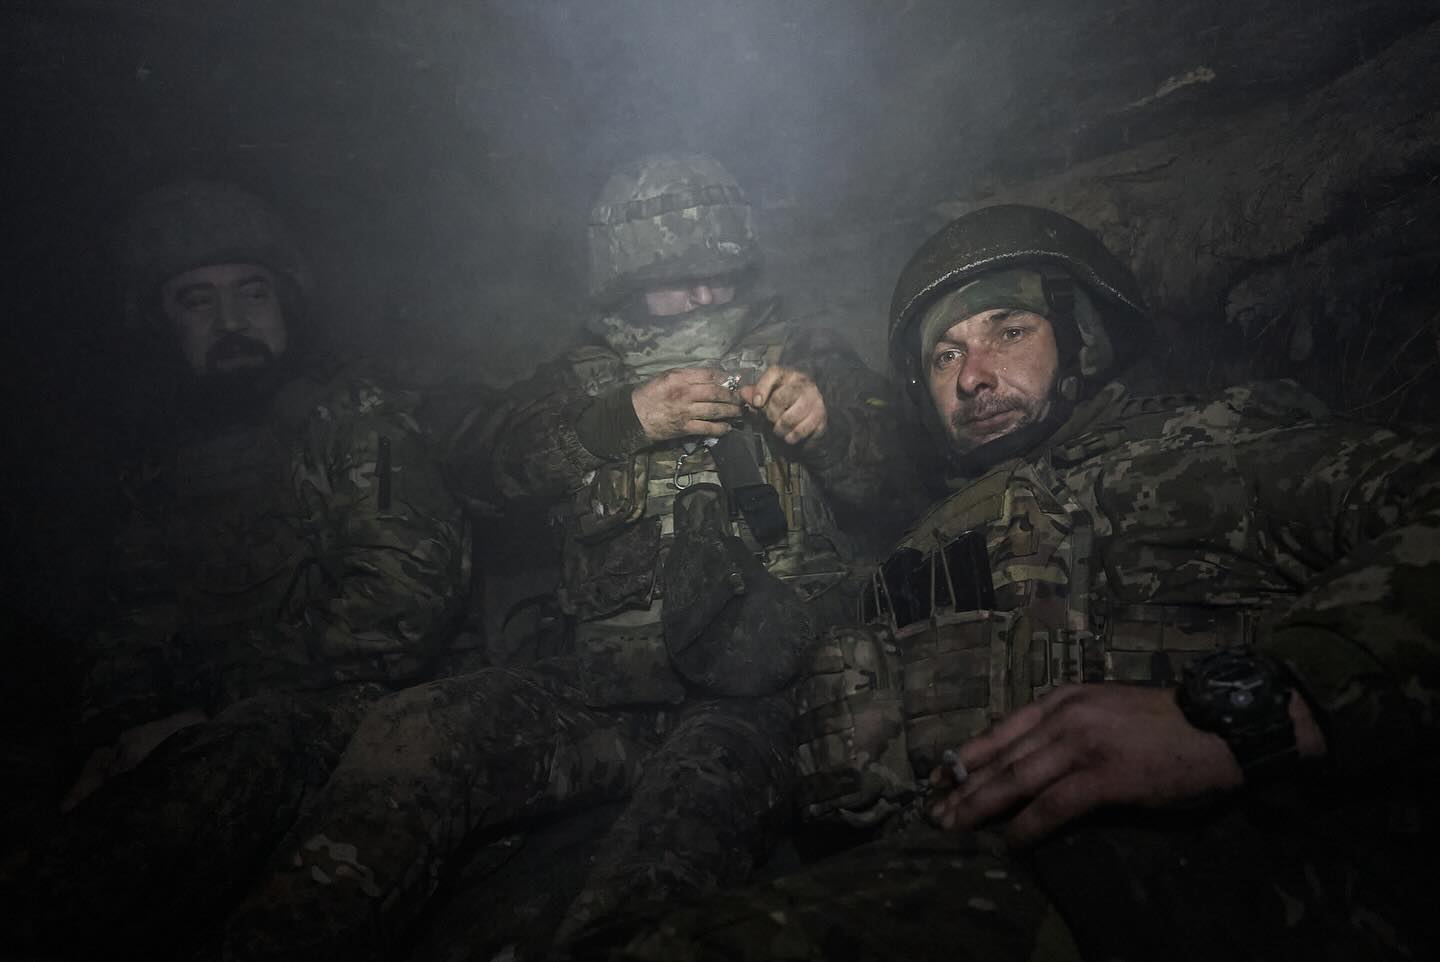 "Тридцять годин на нулі з піхотою": український фотограф показав реальні будні військових (фото)